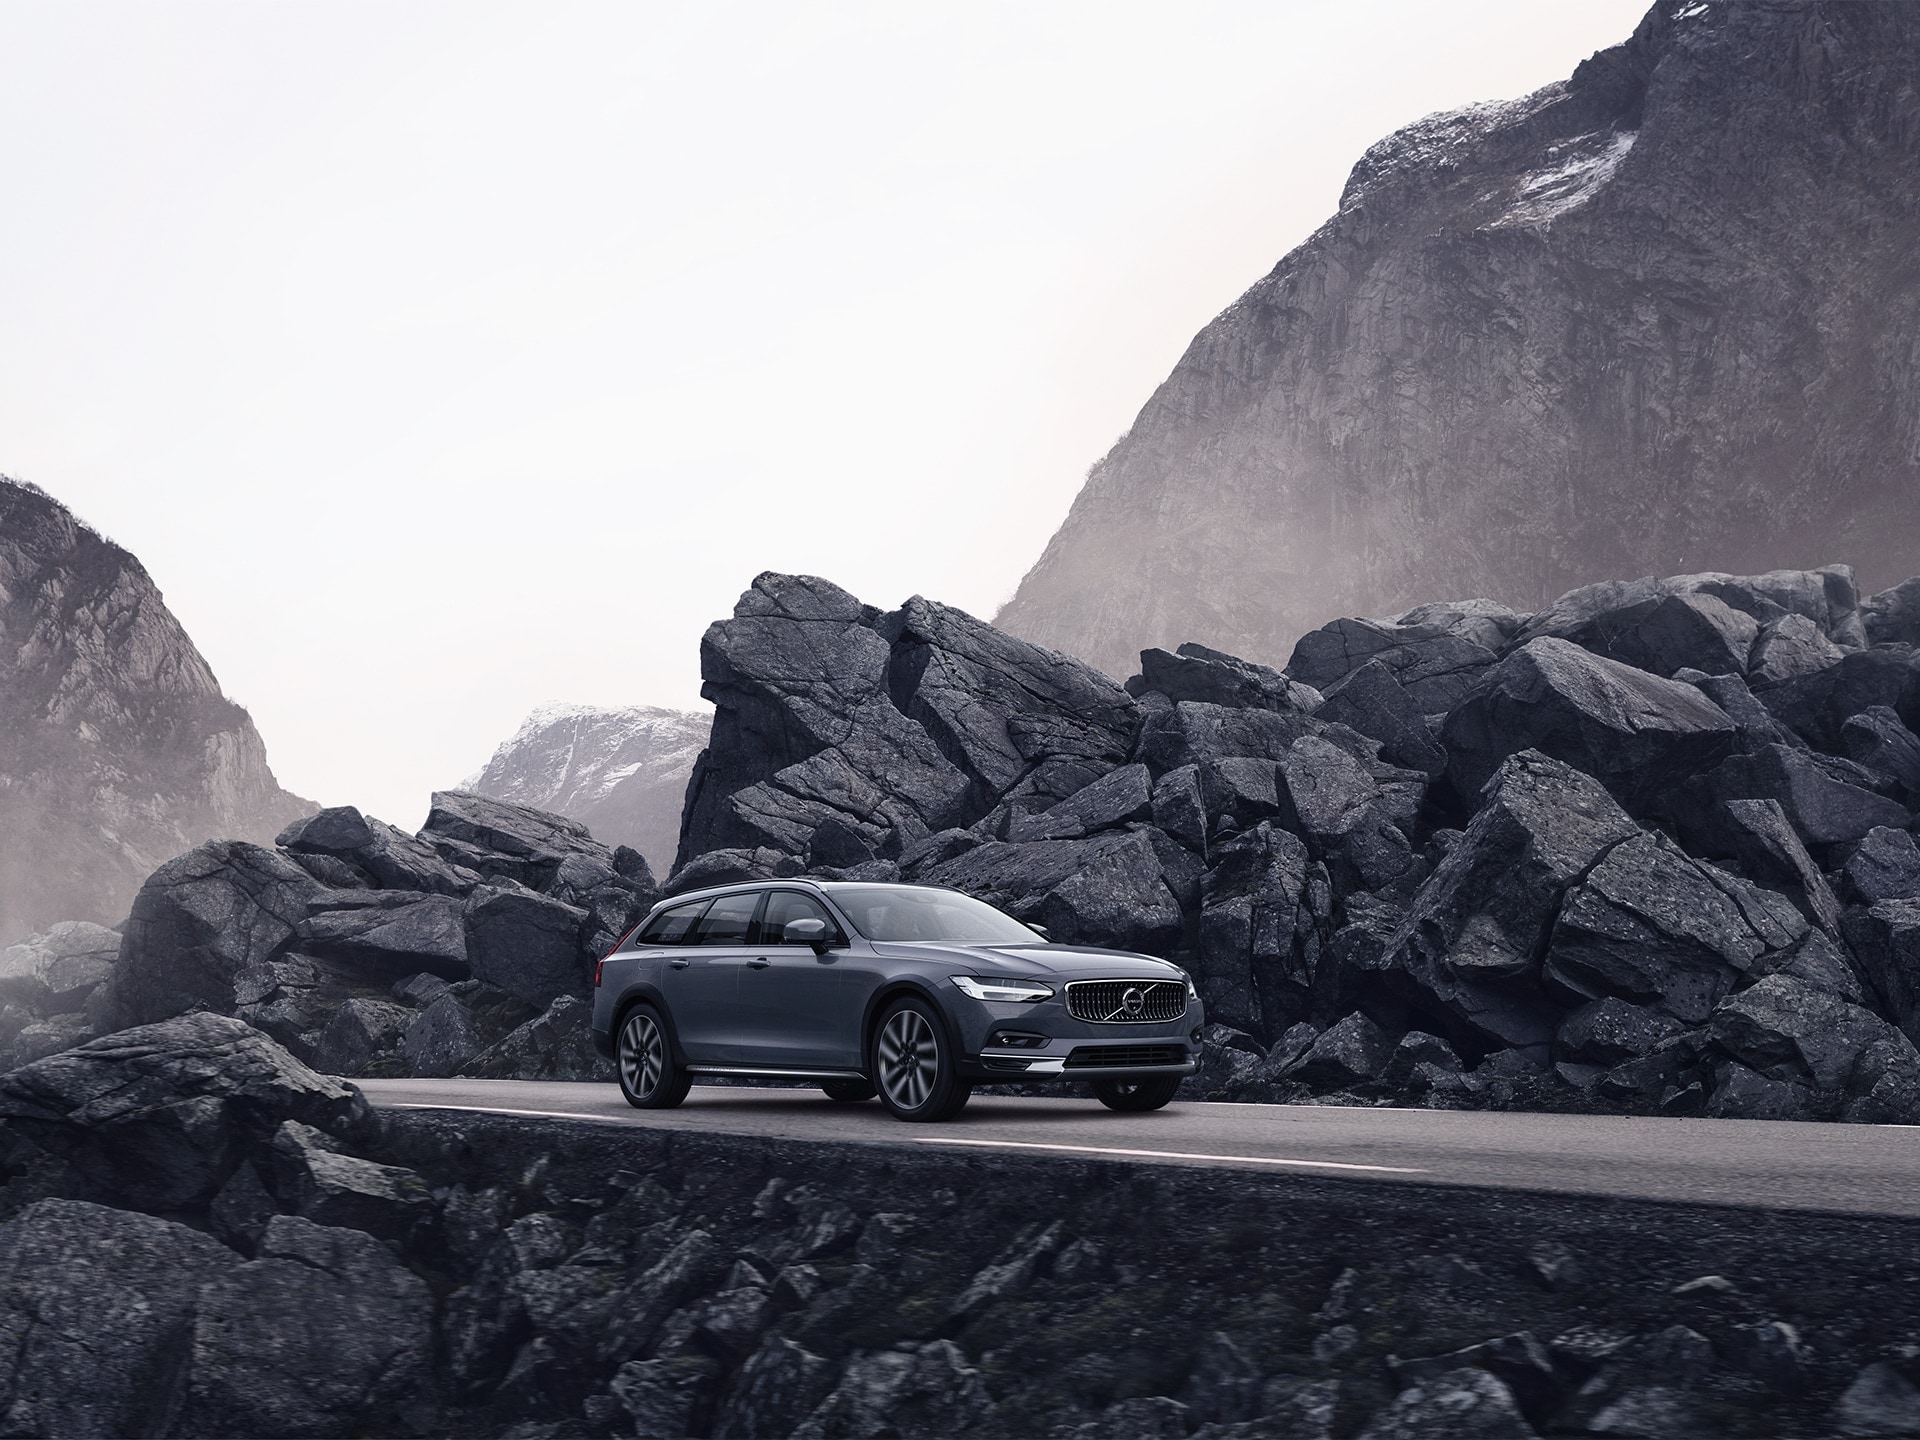 Volvo de culoare gri rulând pe un drum cu pietre pe marginea carosabilului